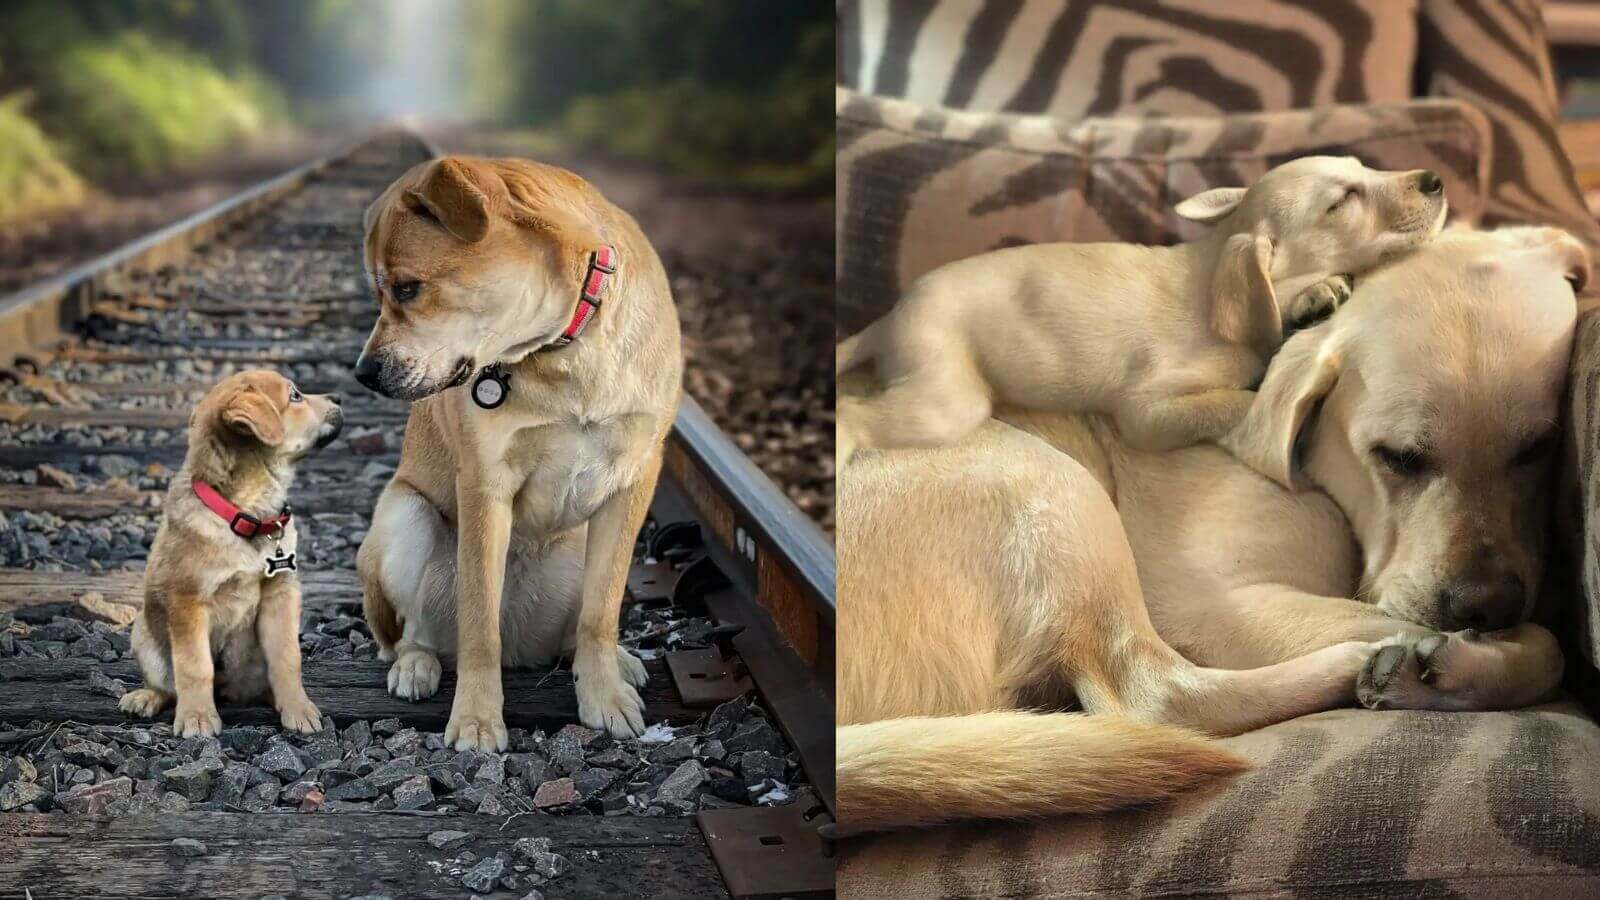 Duas fotos justapostas de cachorros. À esquerda, um cachorro adulto e um filhote sentados sobre trilhos de trem, ambos usando coleiras vermelhas. À direita, dois cachorros de cor clara, um adulto e um filhote, descansando em um sofá.